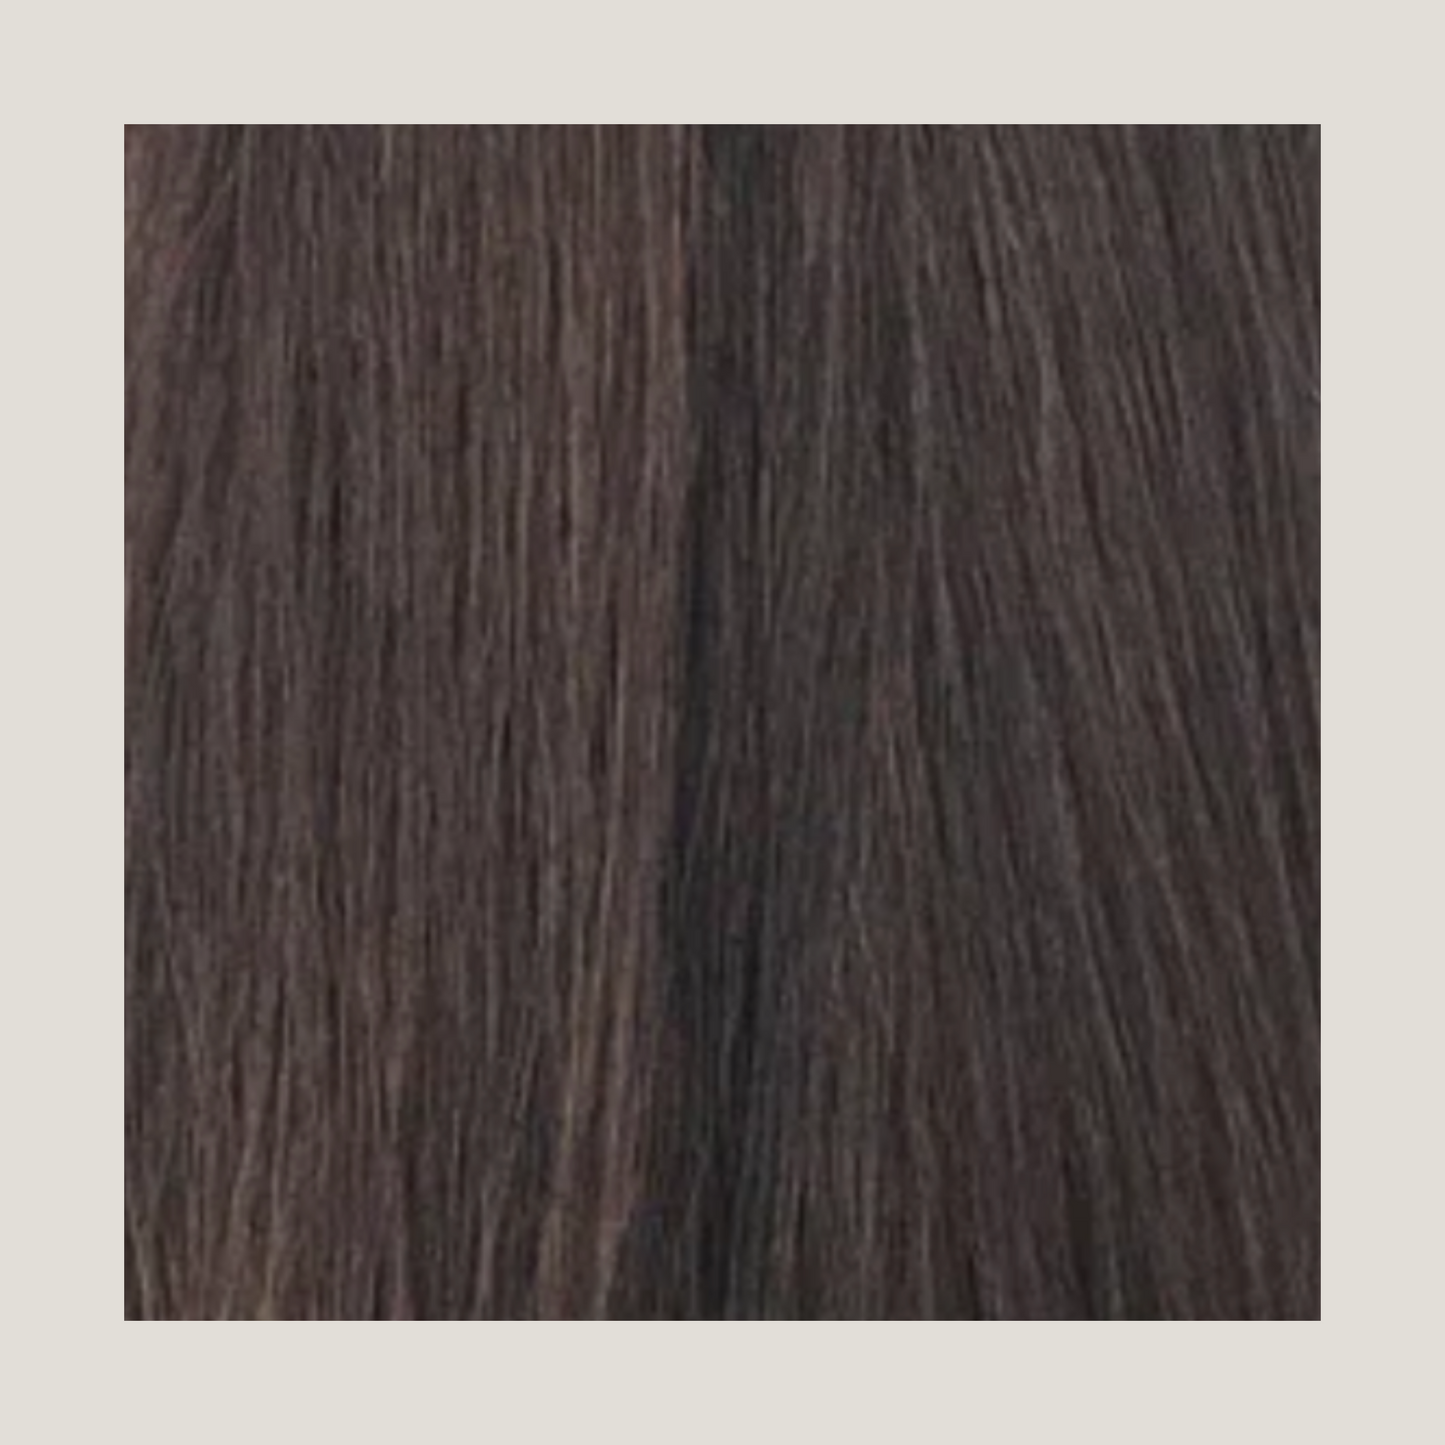 שיער אנושי של רמי בתולה ברזילאי מצויר כפול - ערבות